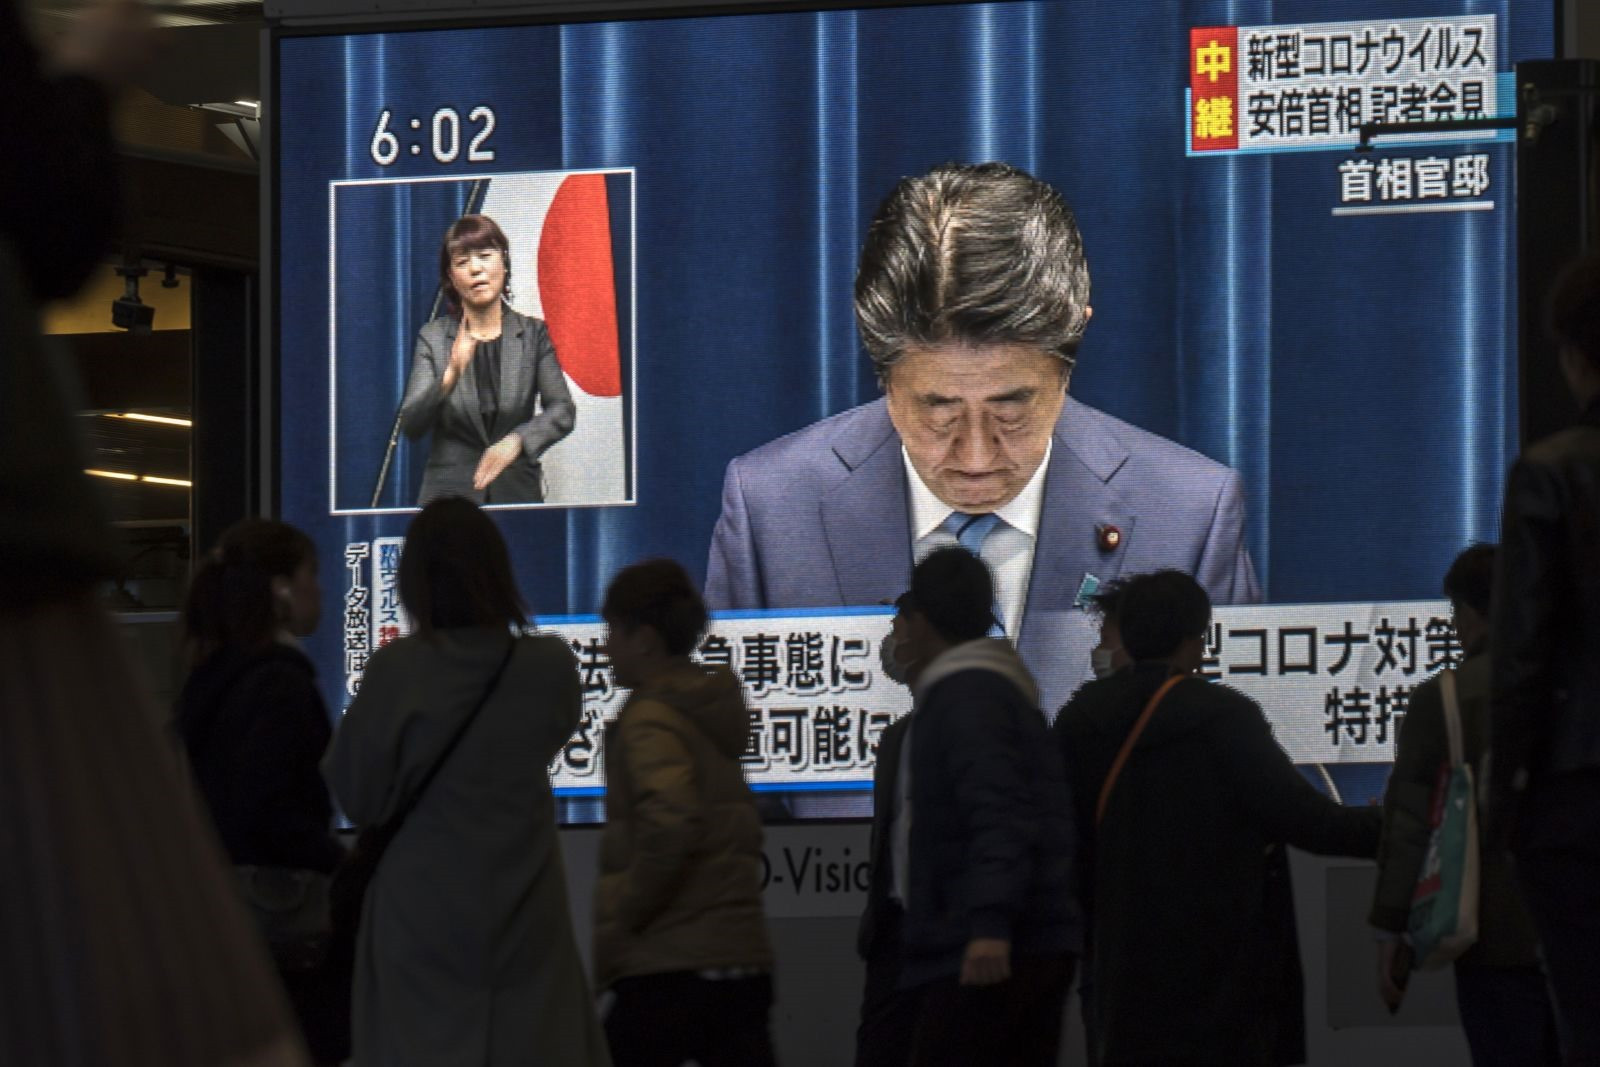 Người dân ở Osaka, Nhật Bản, đi ngang qua màn hình chiếu trực tiếp cảnh Abe nói về đại dịch Covid-19 vào năm 2020